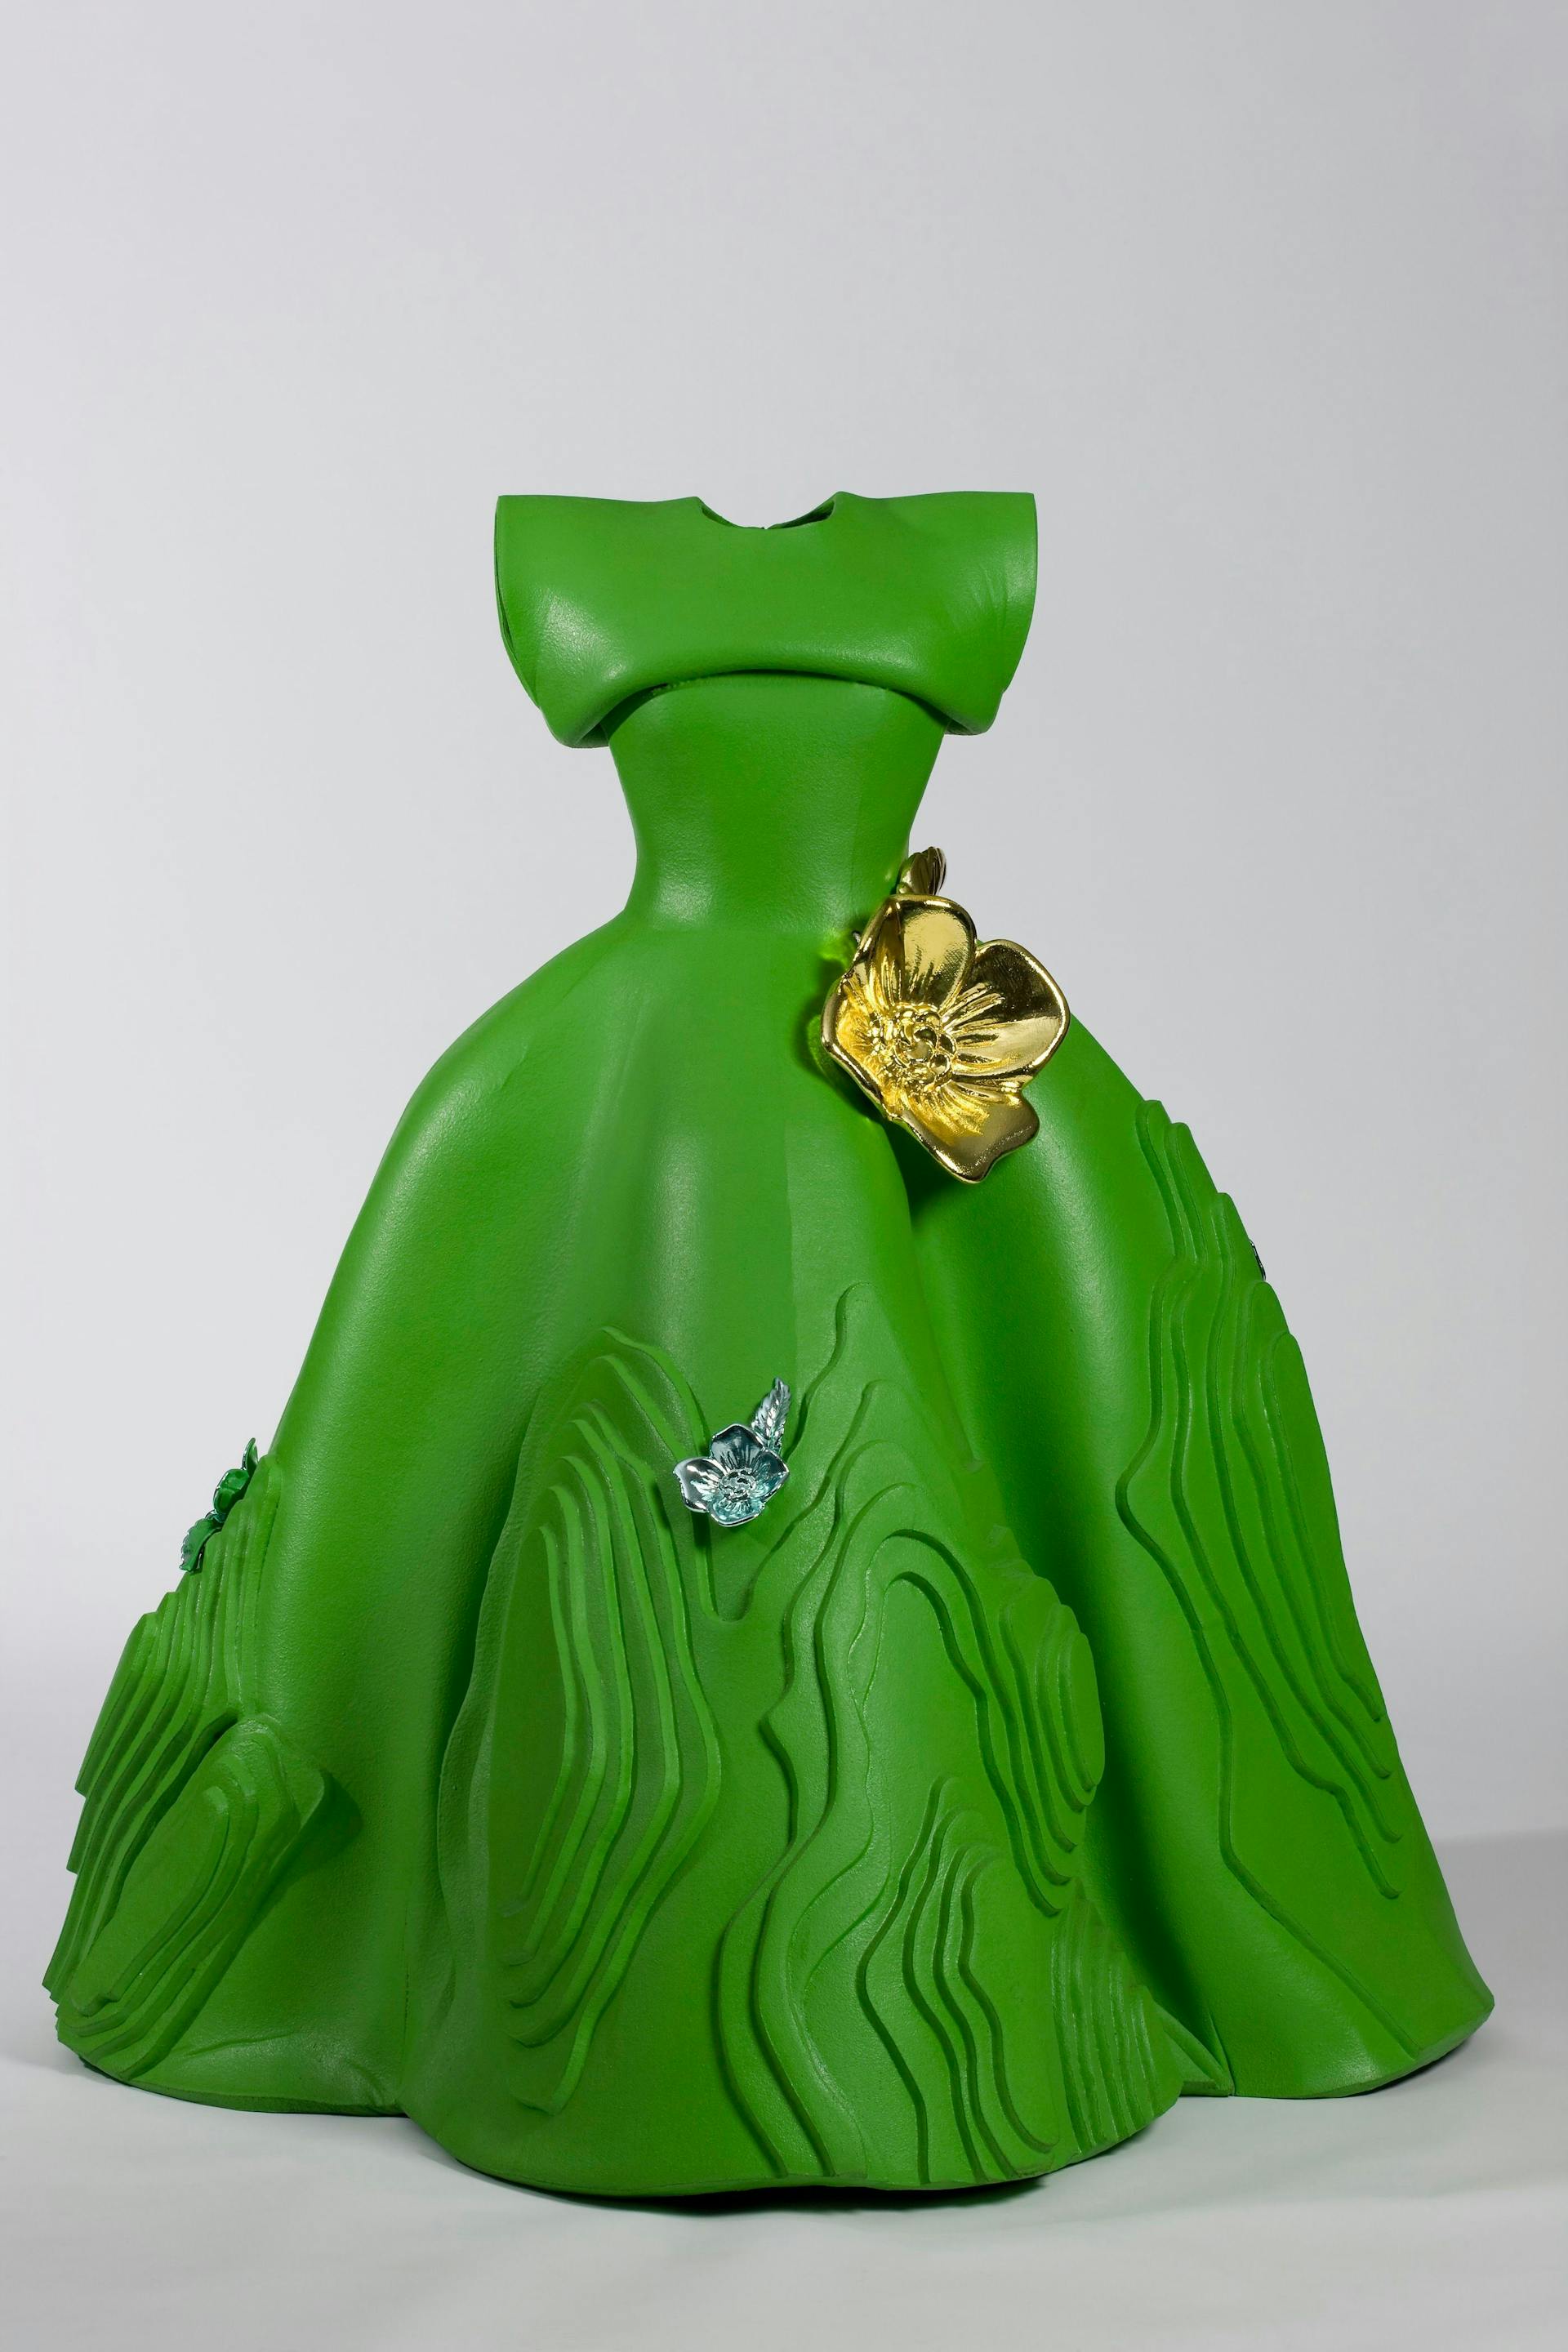 Marga Weimans, Green Landscape Dress (uit collectie Wonderland, spring/summer 2009), 2008, polyurethaan, kunststof, Groninger Museum, aangekocht met steun van het Mondriaan Fonds, foto: Marten de Leeuw   